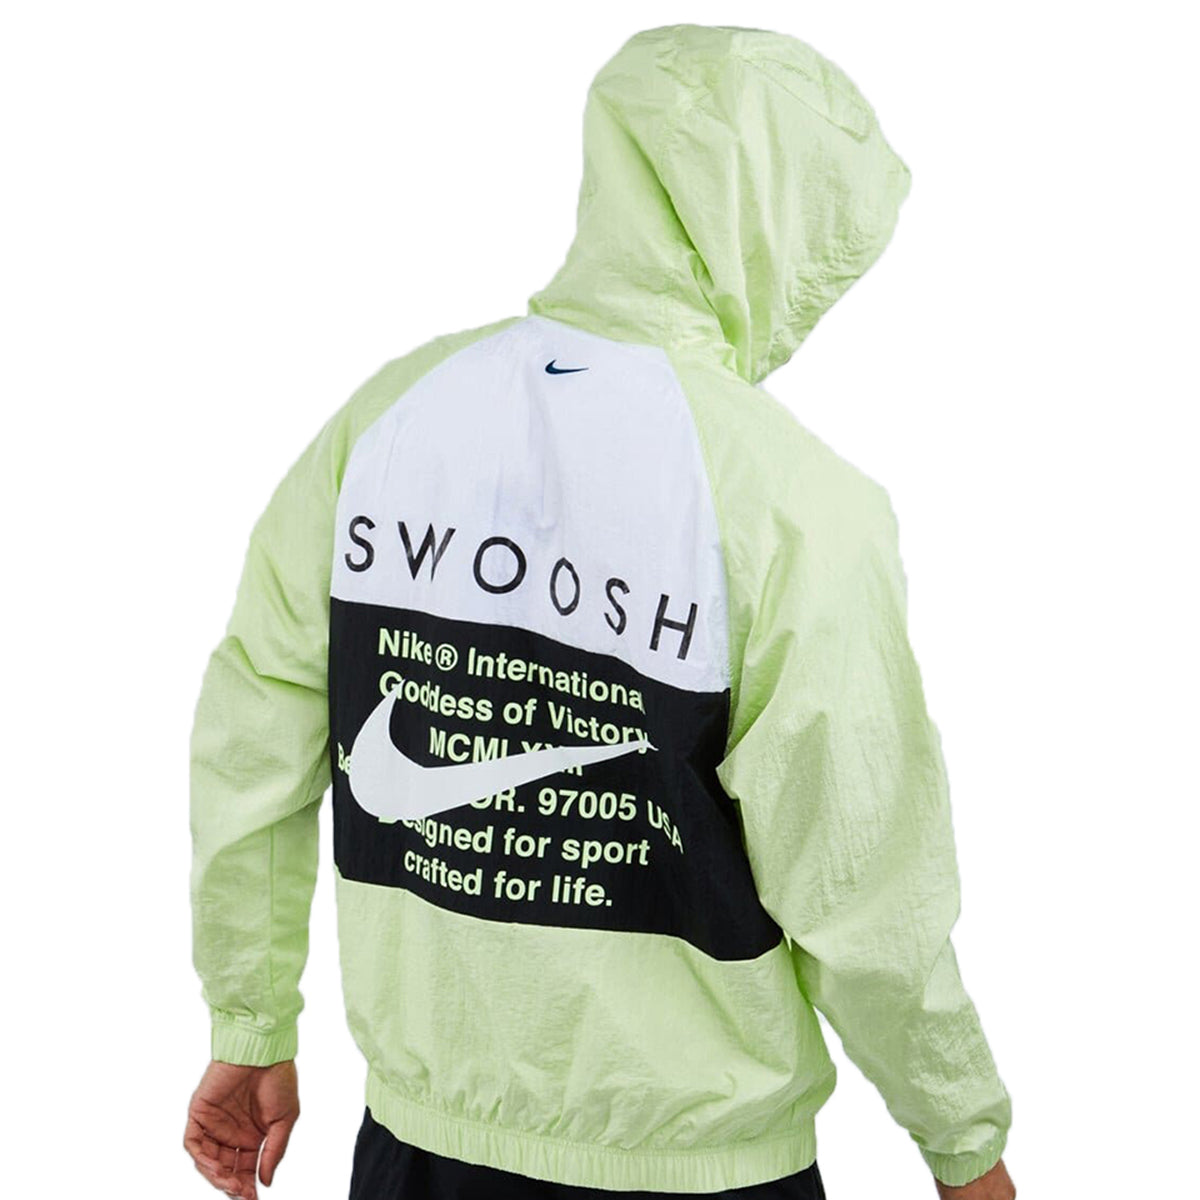 Nike Sportswear Swoosh Woven Hooded Jacket Mens Style : Cj4888